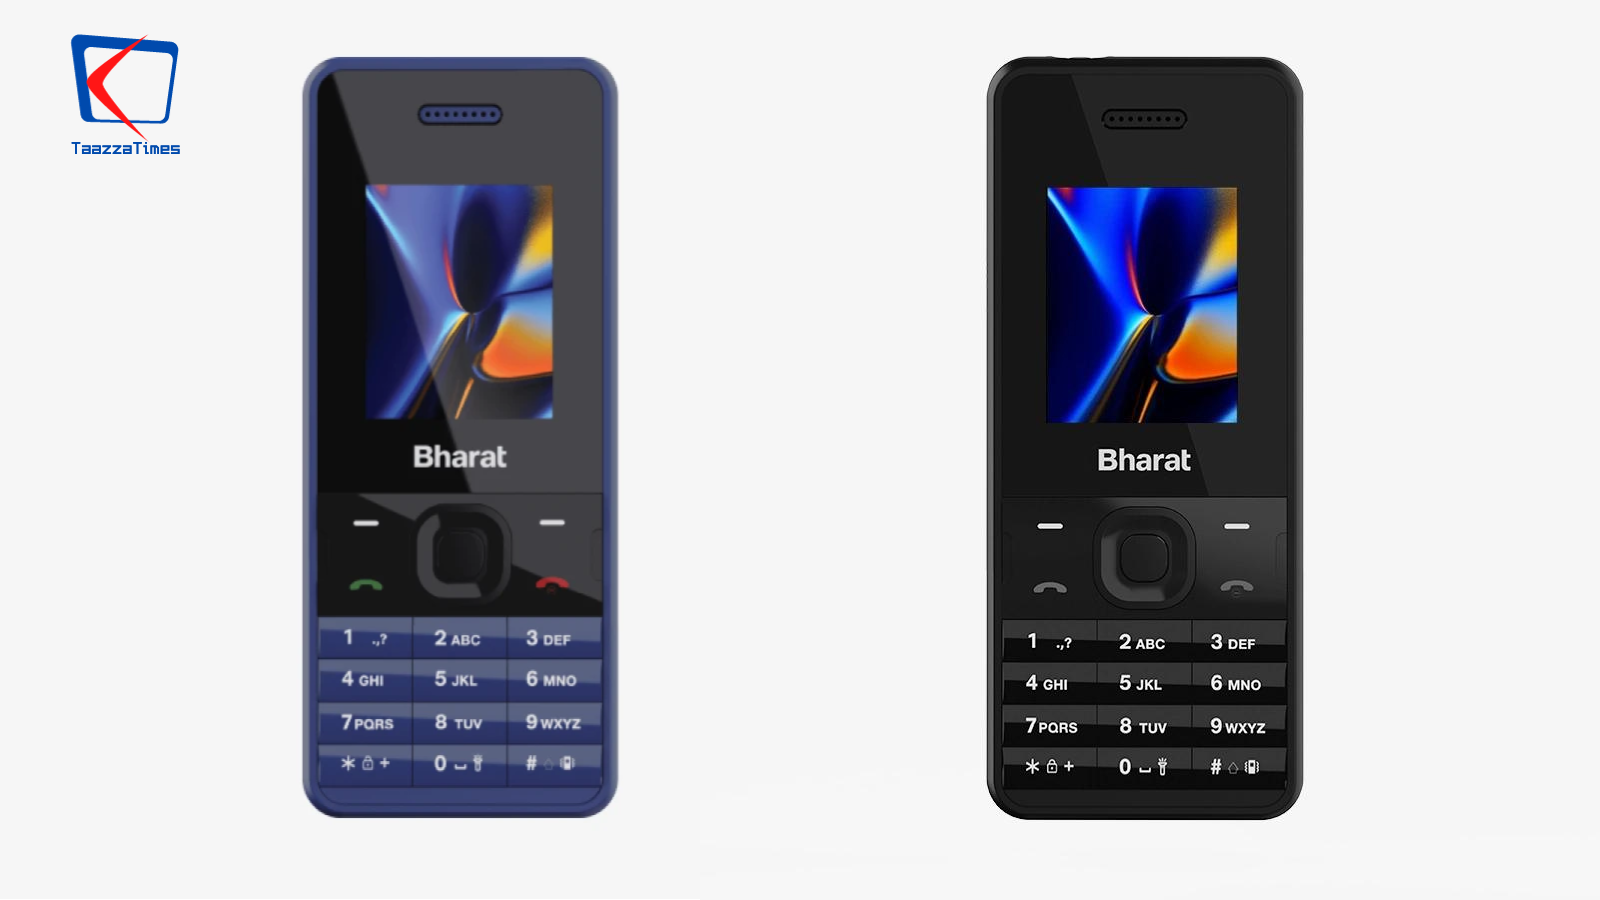 Jio Bharat Phone